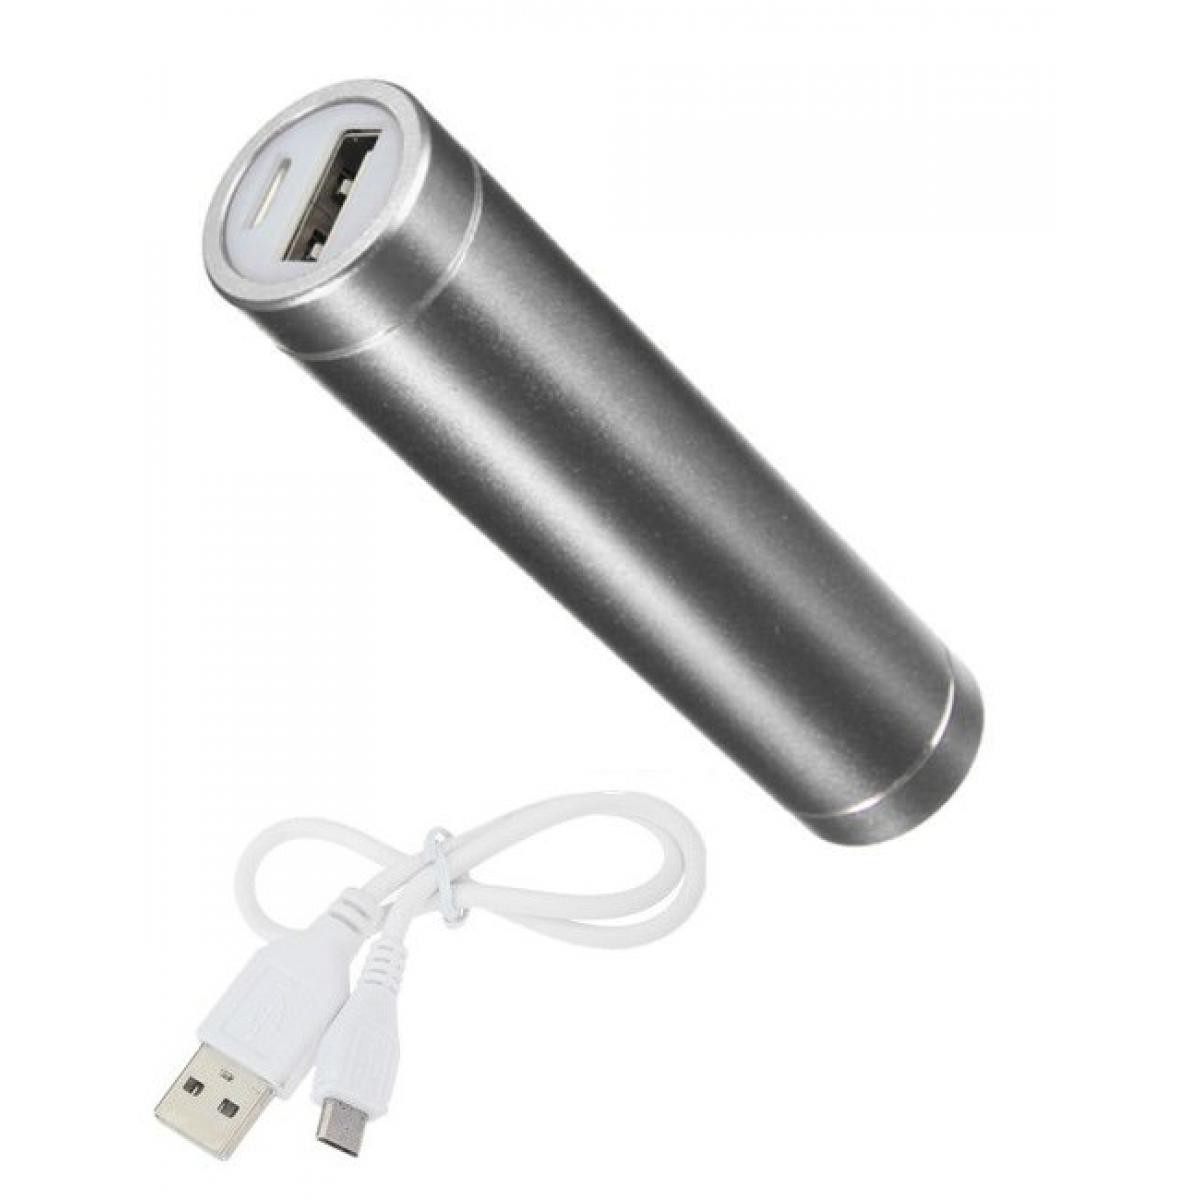 Shot - Batterie Chargeur Externe pour "SAMSUNG Galaxy A21" Power Bank 2600mAh avec Cable USB/Mirco USB Secours Telephone (ARGENT) - Chargeur secteur téléphone